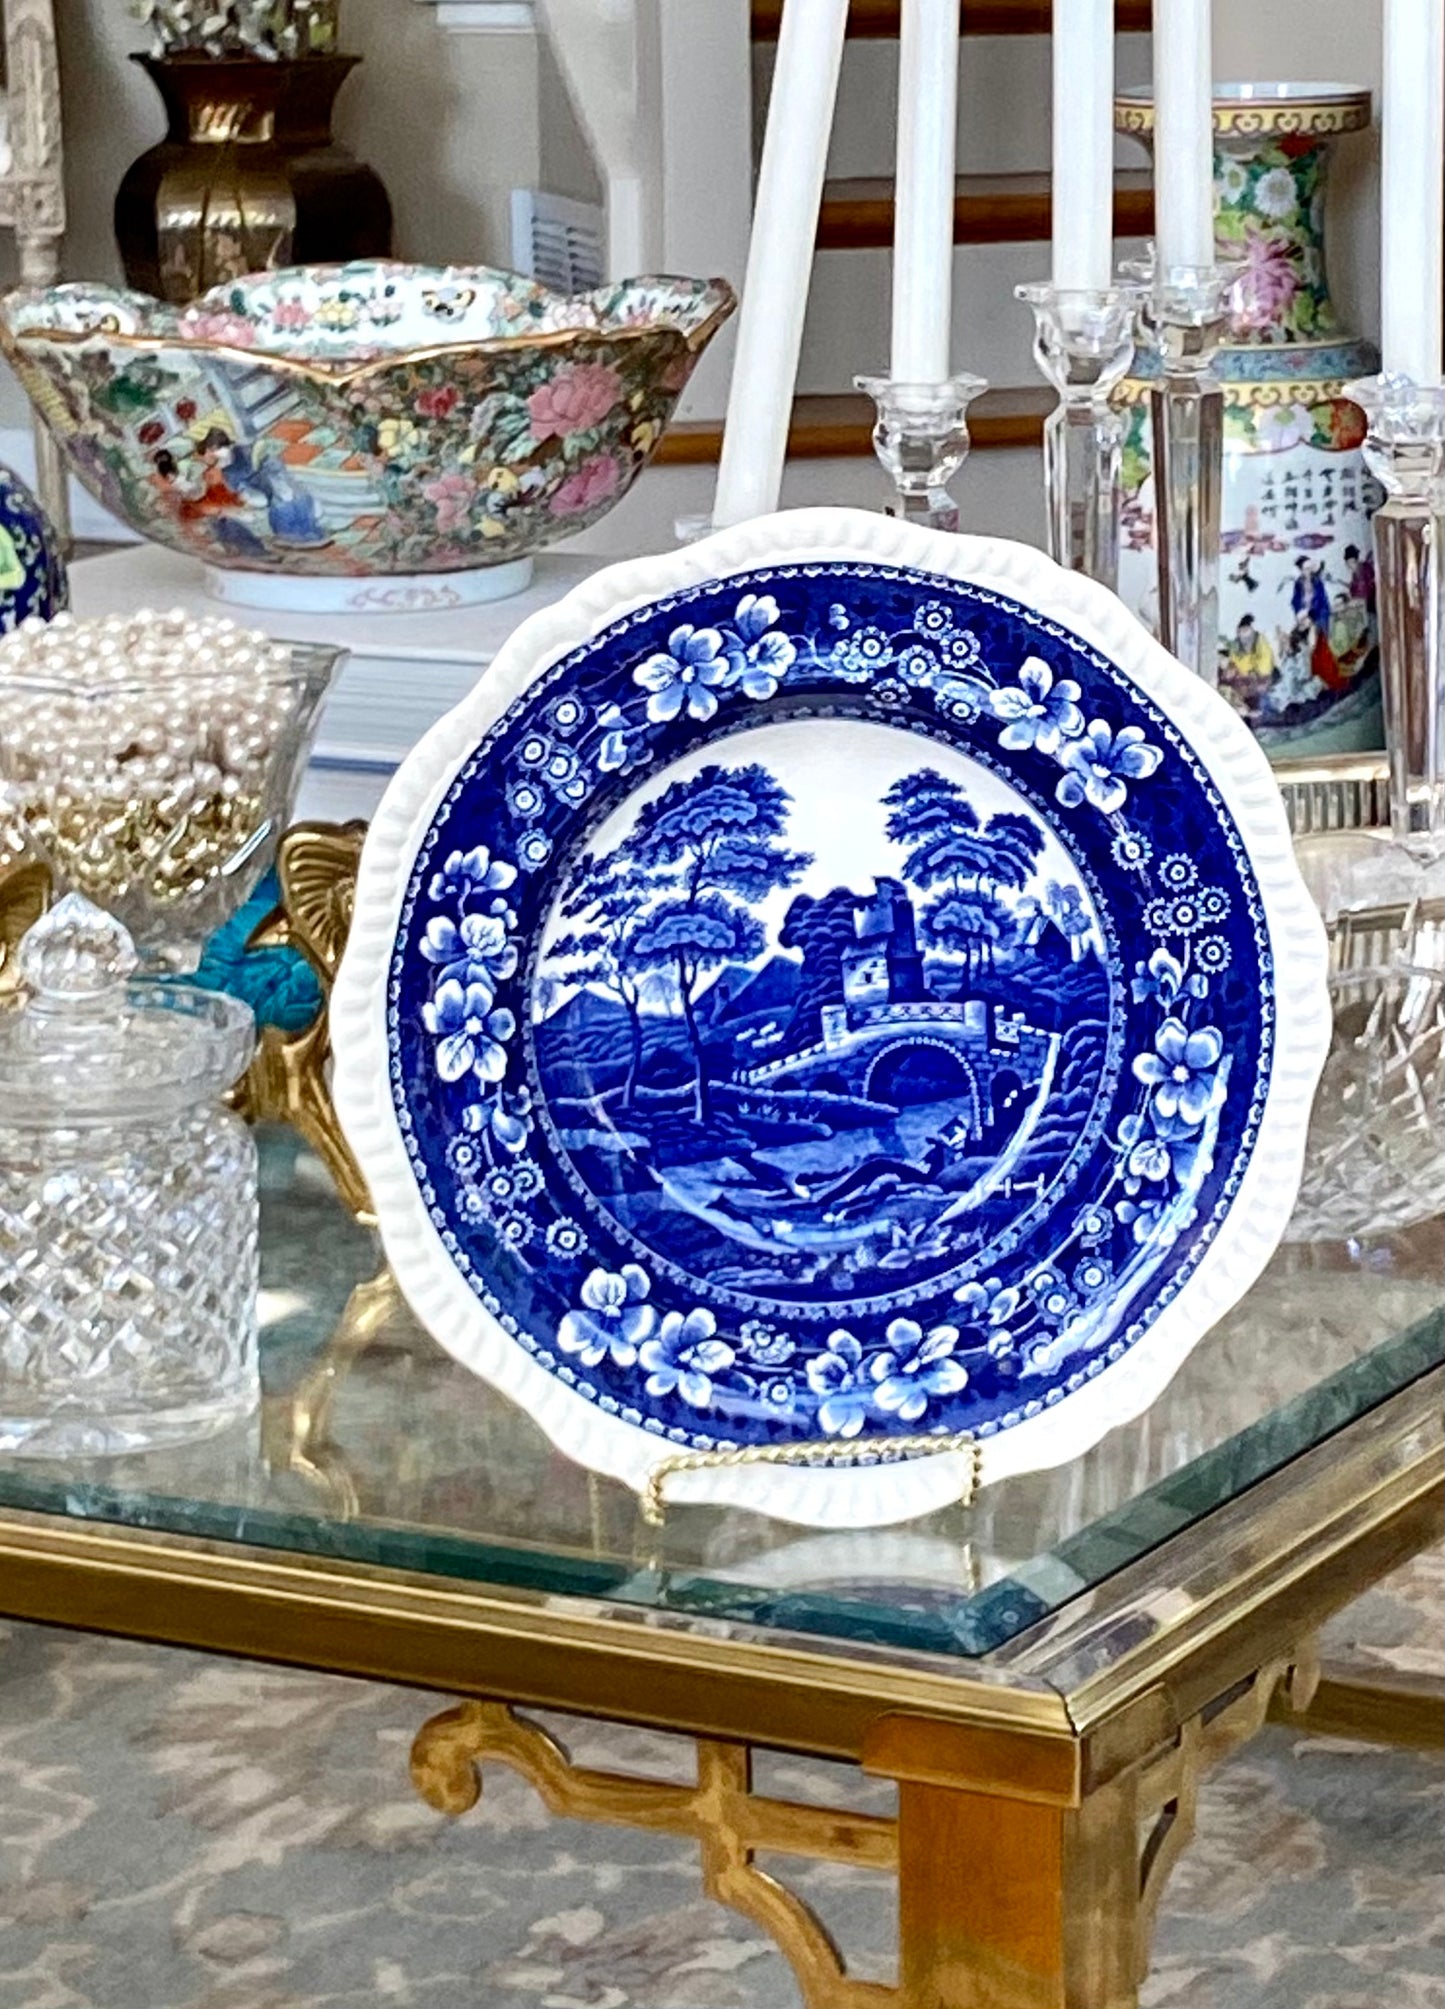 Rare Antique Copeland Spode Of England cobalt blue & white Scalloped Edge round serving bowl